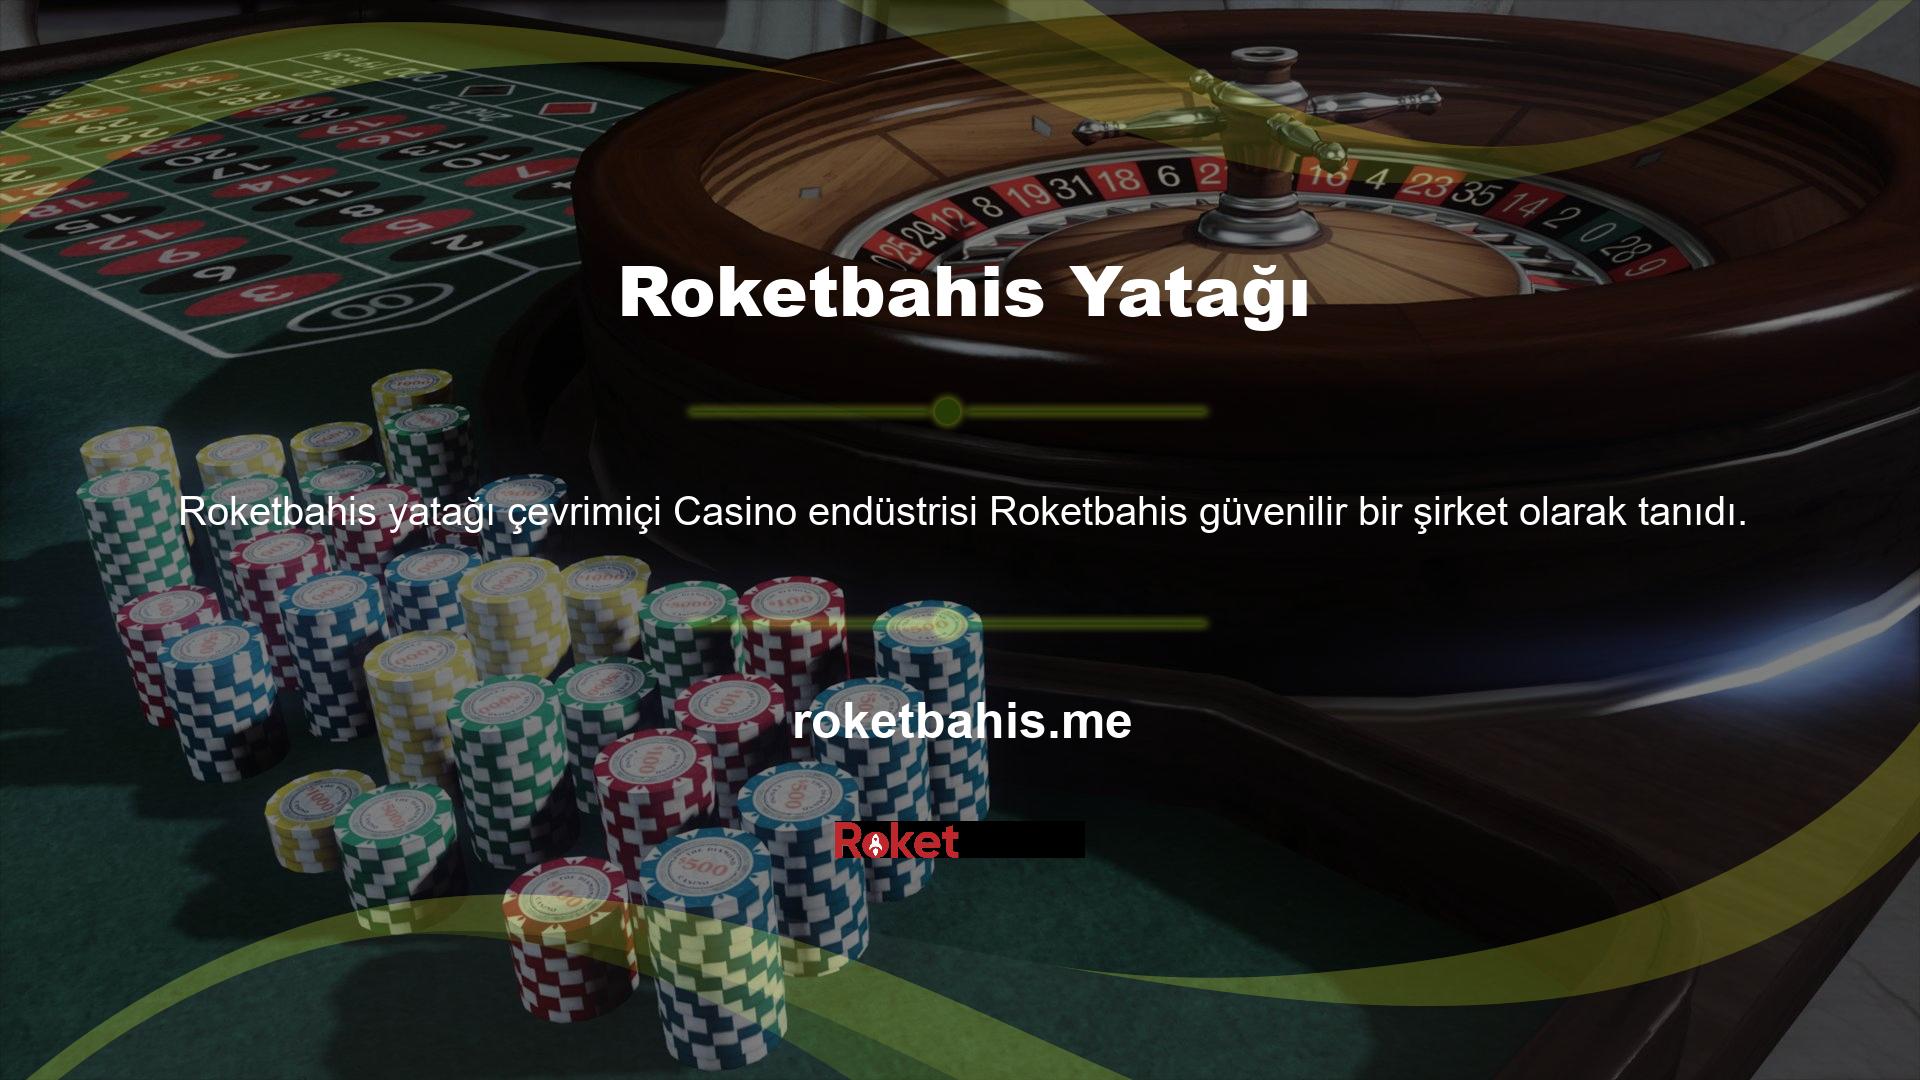 Roketbahis, bahis oyunlarını yönetenlerin hayran olduğu ve tercih ettiği Türk casino şirketleri arasında yer almaktadır